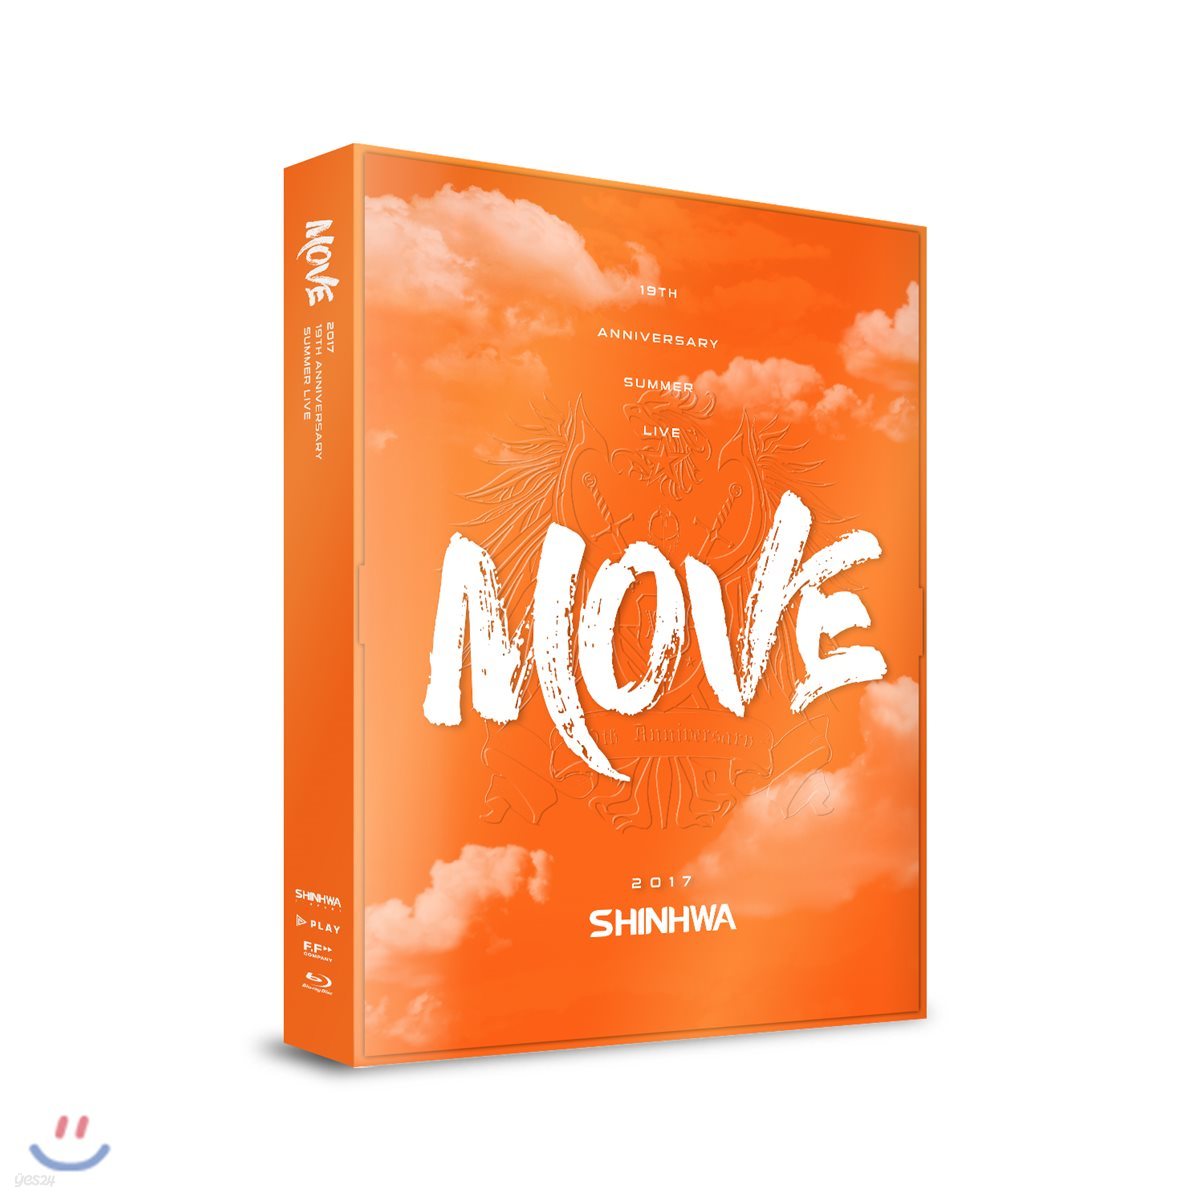 신화 (Shinhwa) - SHINHWA 19th Anniversary Summer Live “Move” Blu-ray